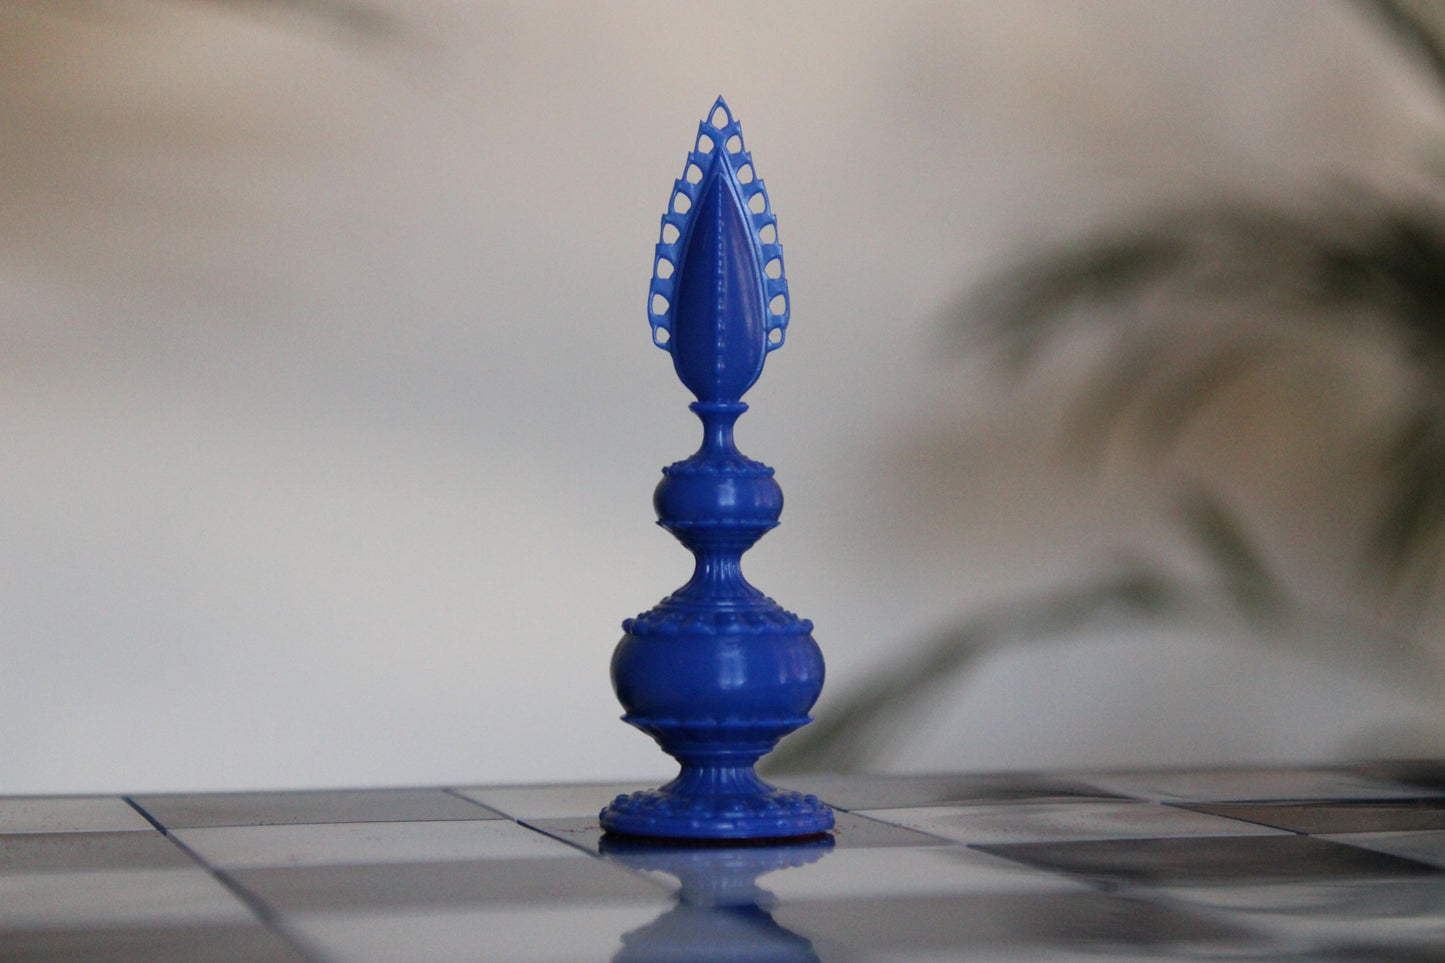 Pièces de jeu d'échecs Bleu Collection Héritage